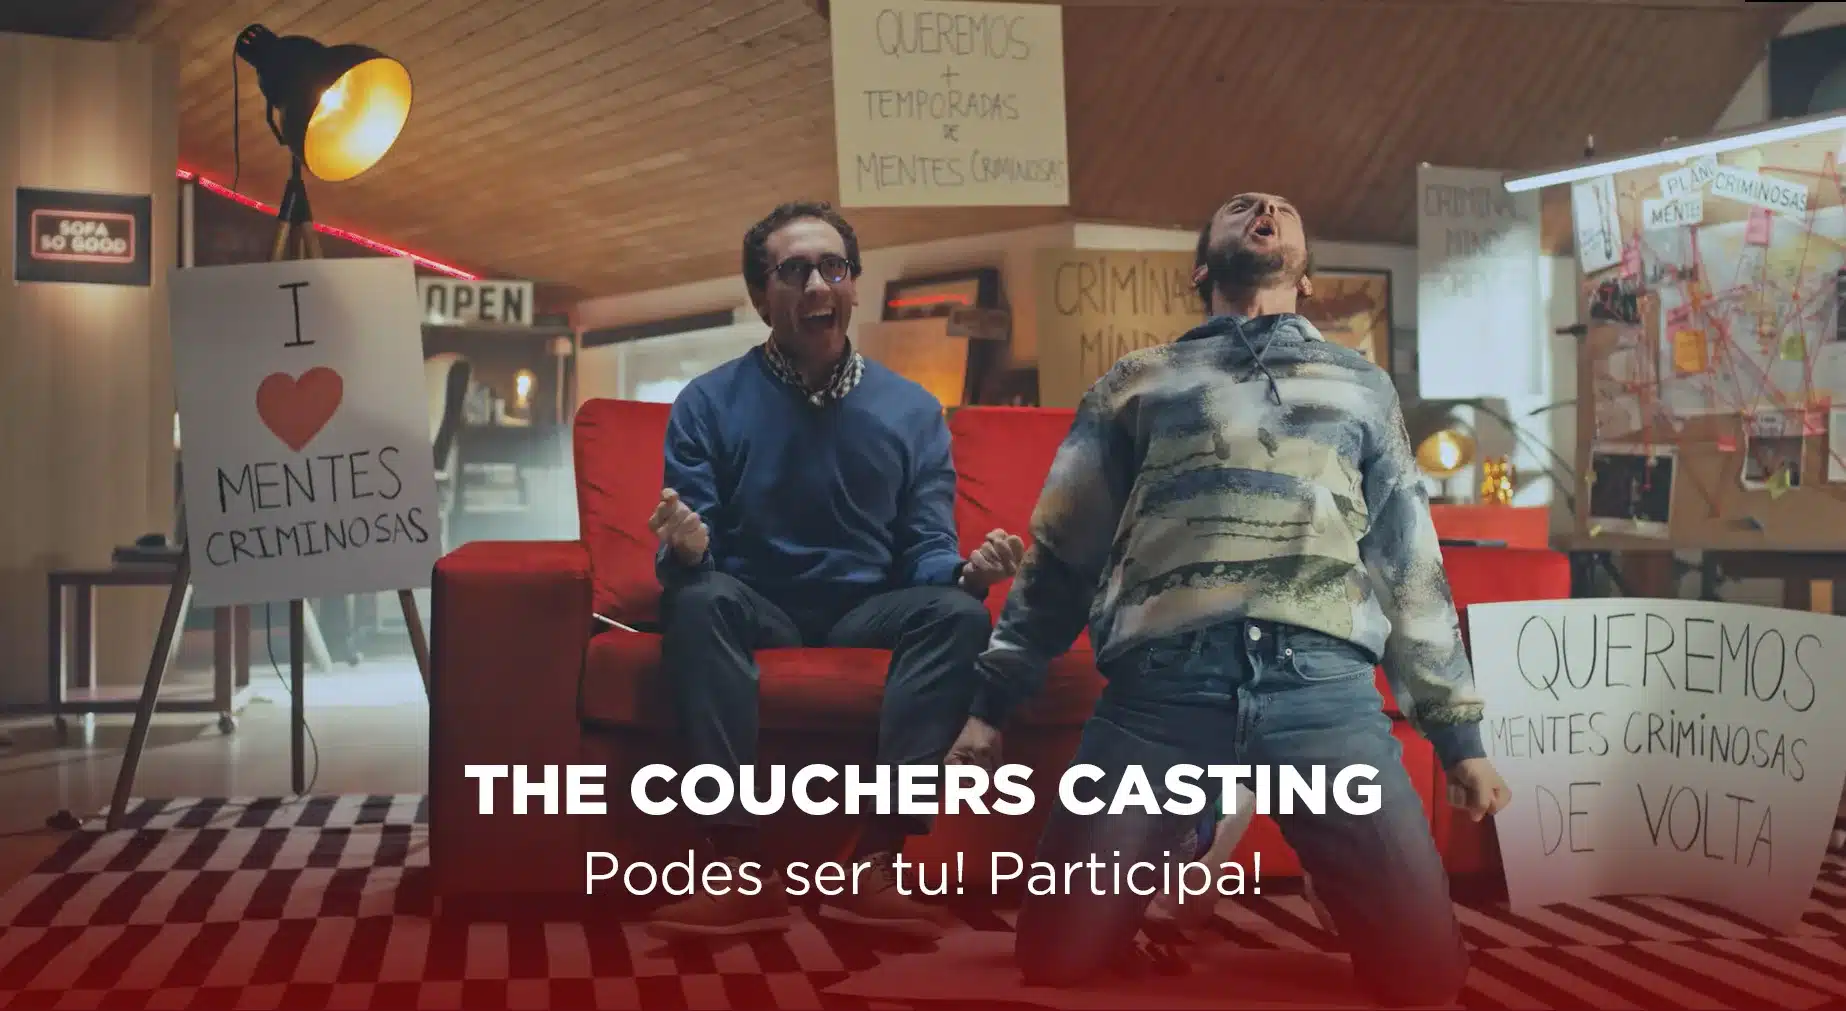 GQ Portugal - Couch potato mode on: 5 séries e 5 filmes para ver